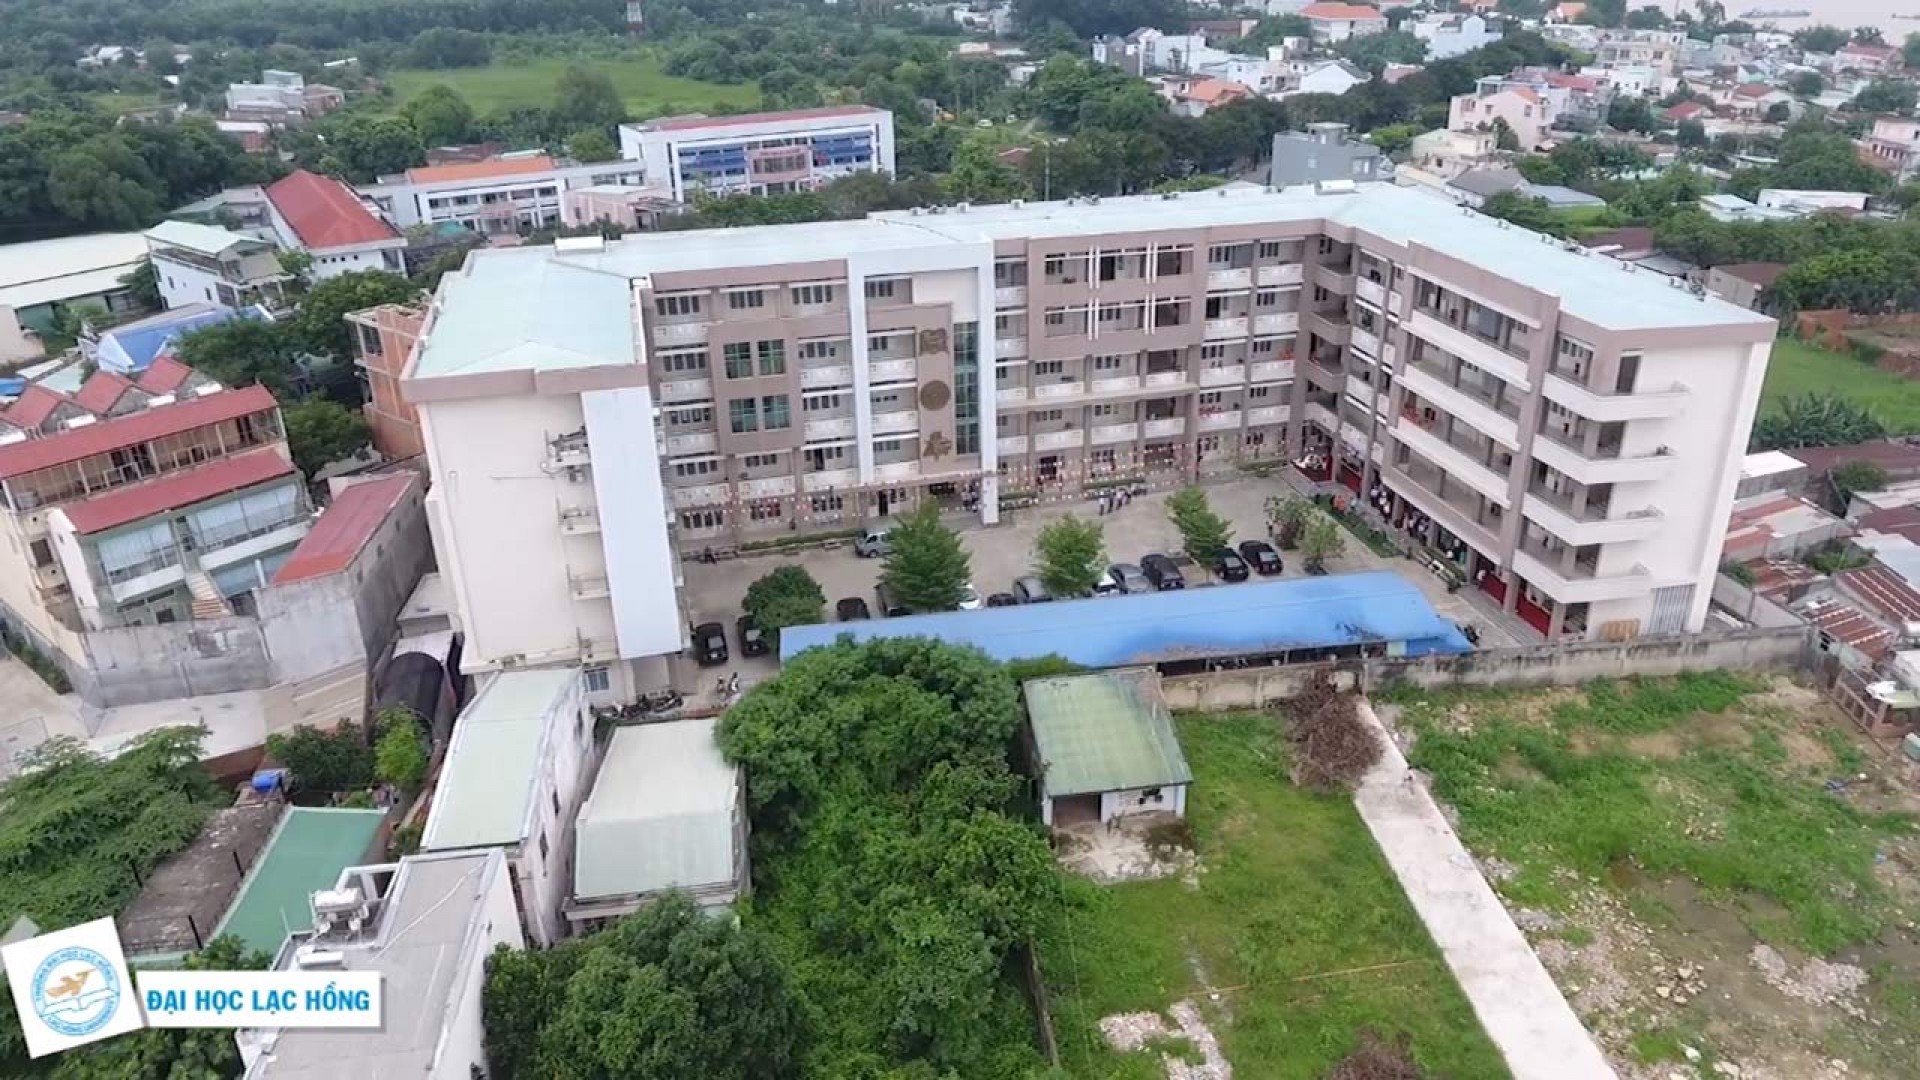 Đại học Lạc Hồng Đồng Nai – ươm mầm sáng tạo công nghệ